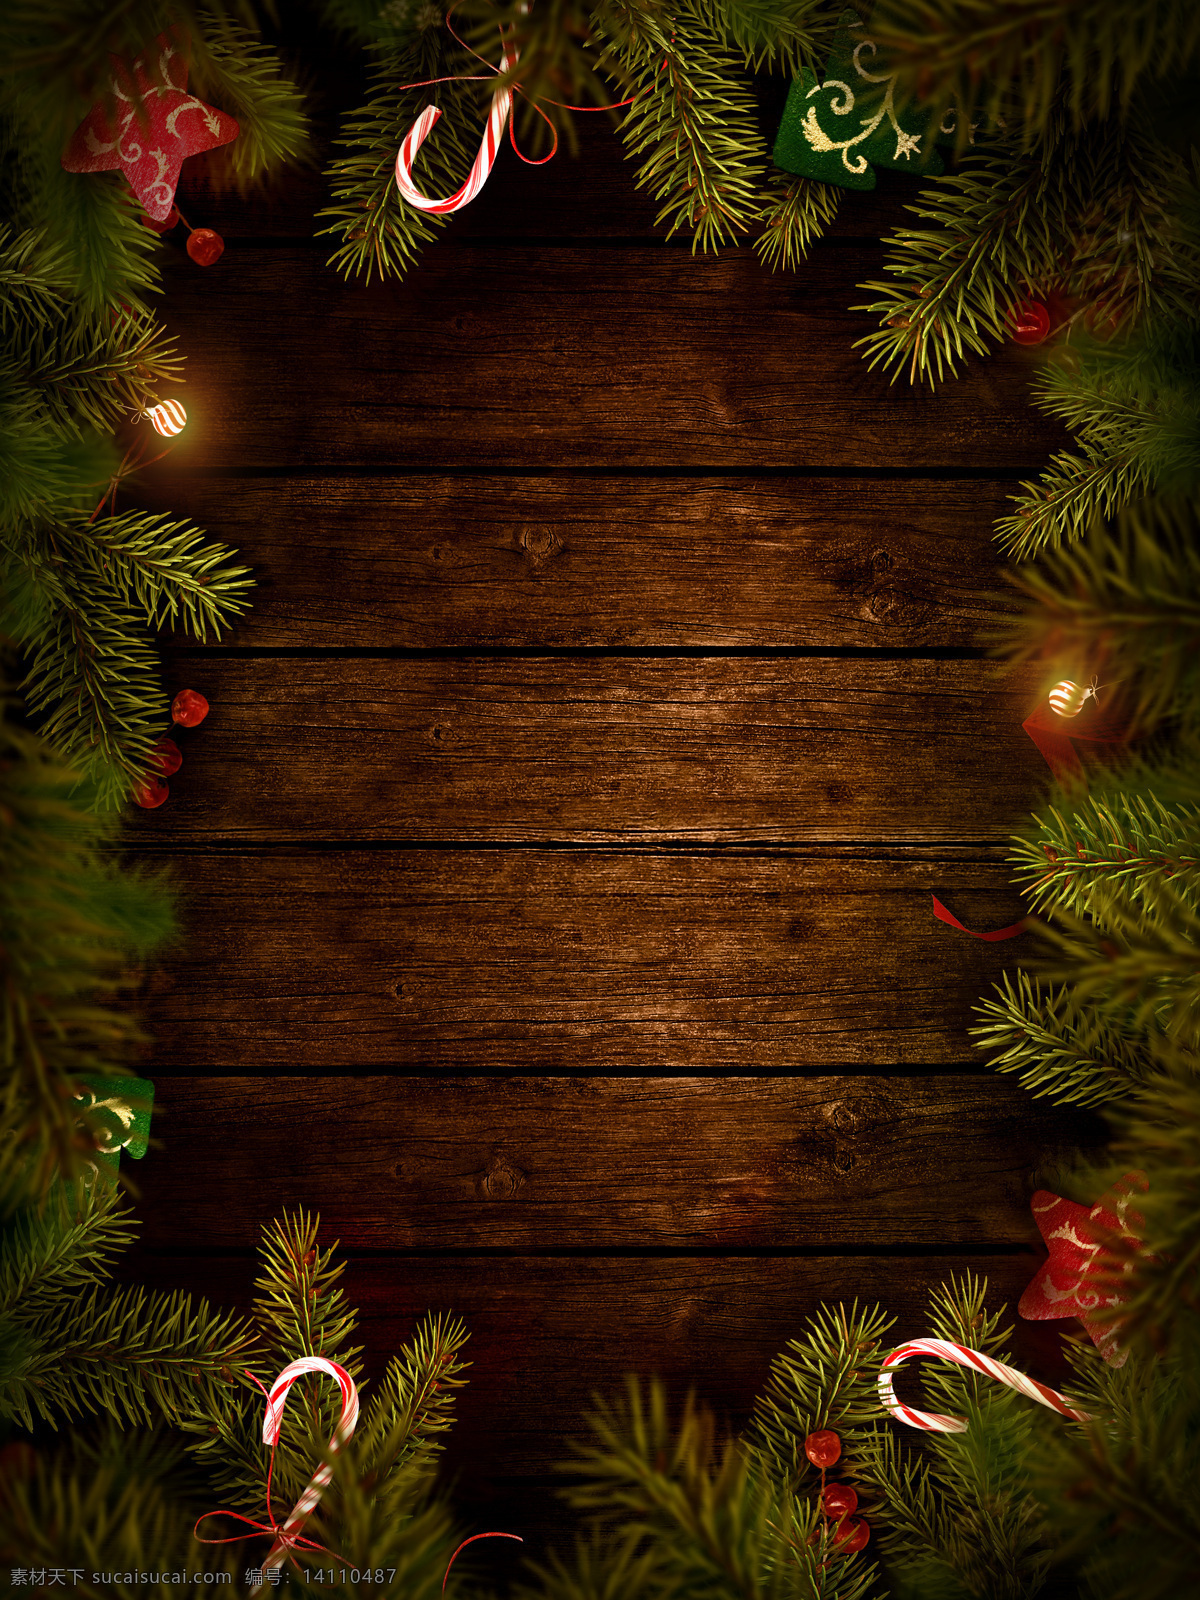 圣诞树 边框 木板 圣诞边框 圣诞节海报 圣诞背景 圣诞节背景 新年背景 底纹背景 圣诞节 节日素材 节日庆典 生活百科